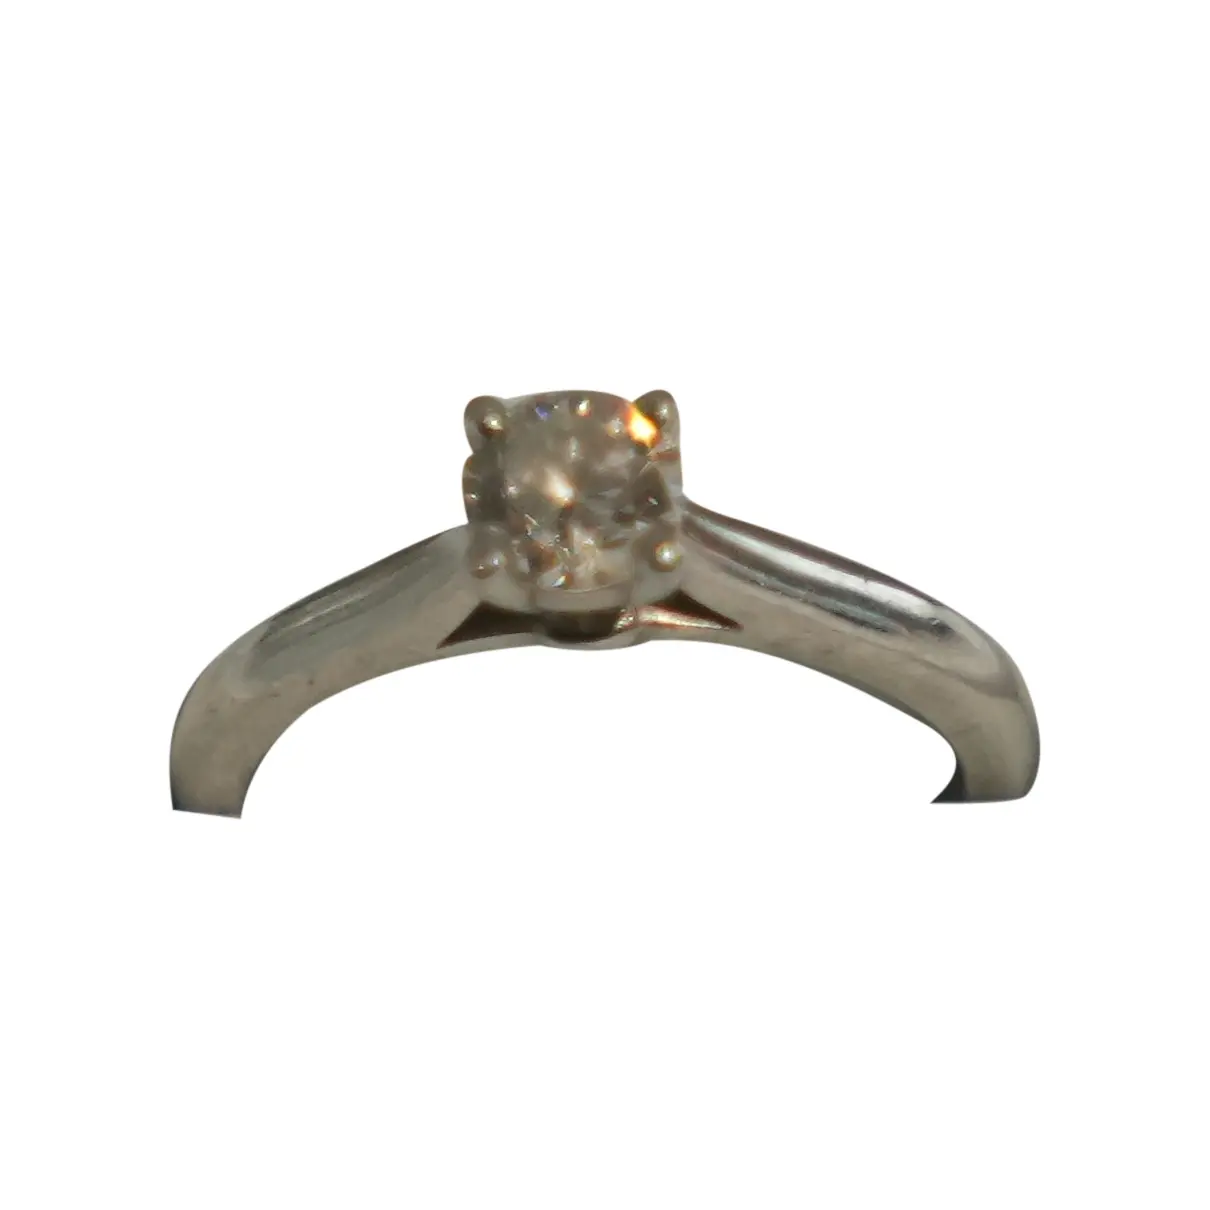 1895 platinum ring